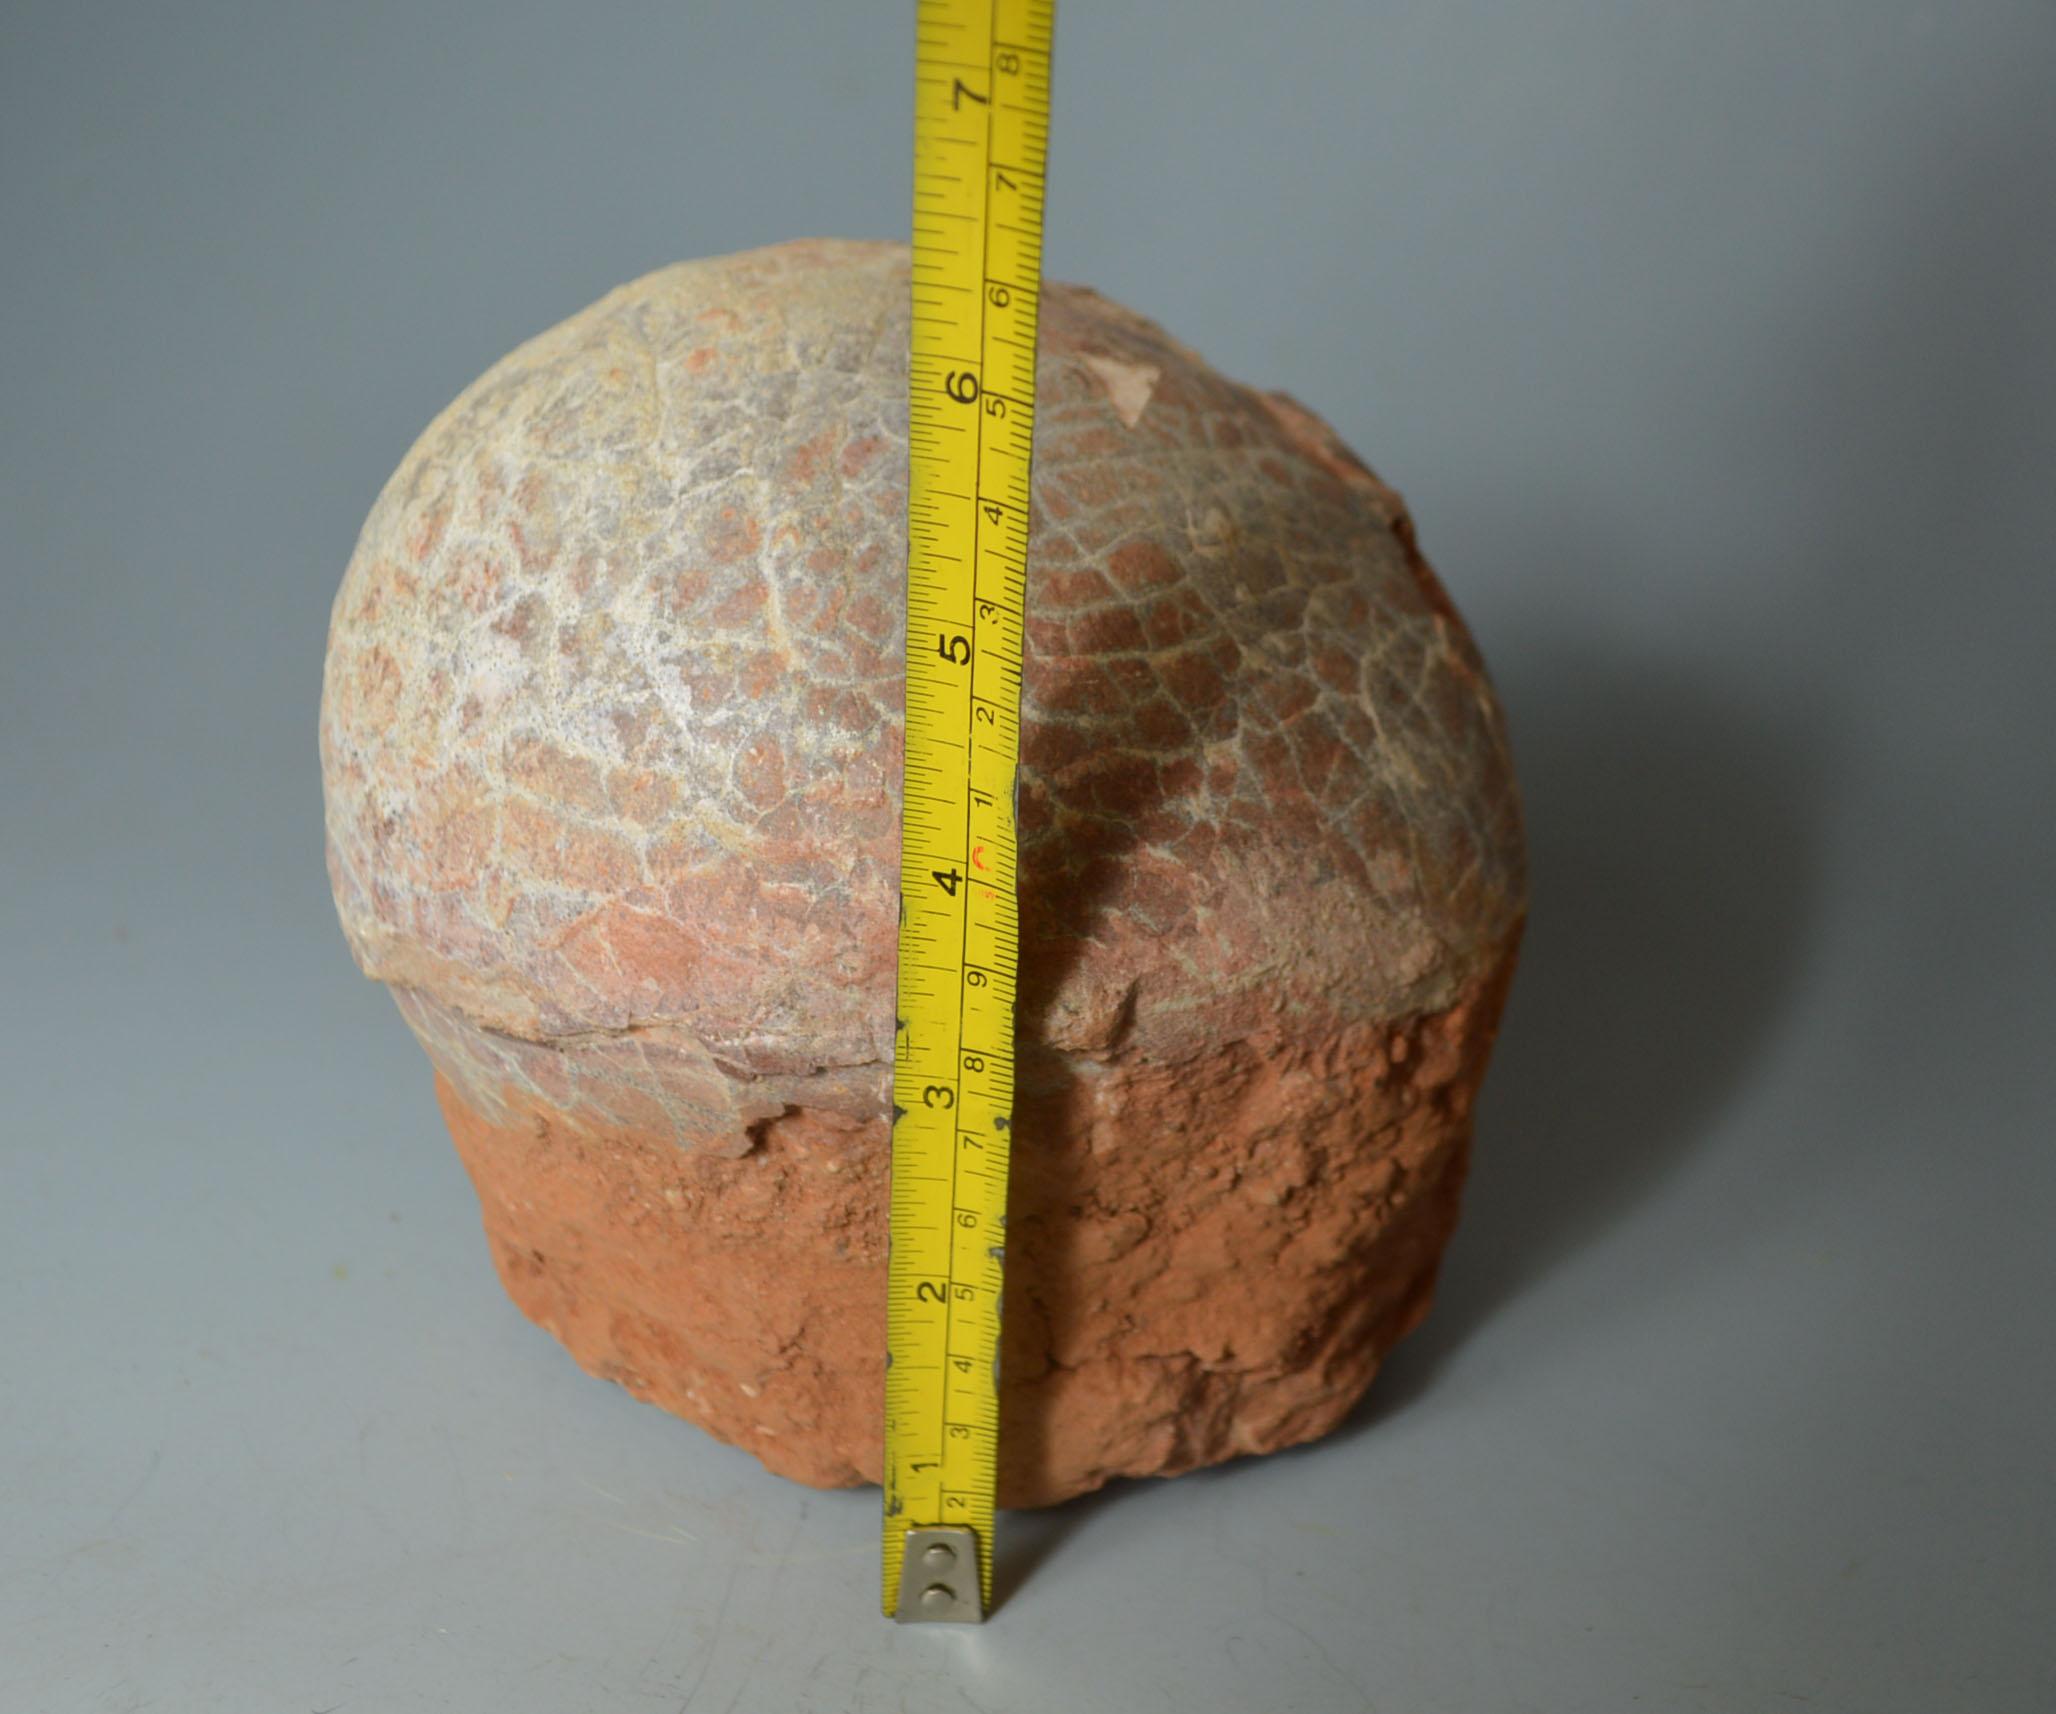 Chinese Large Fossilized Hadrosaur Dinosaur Egg, circa 70 Million Years